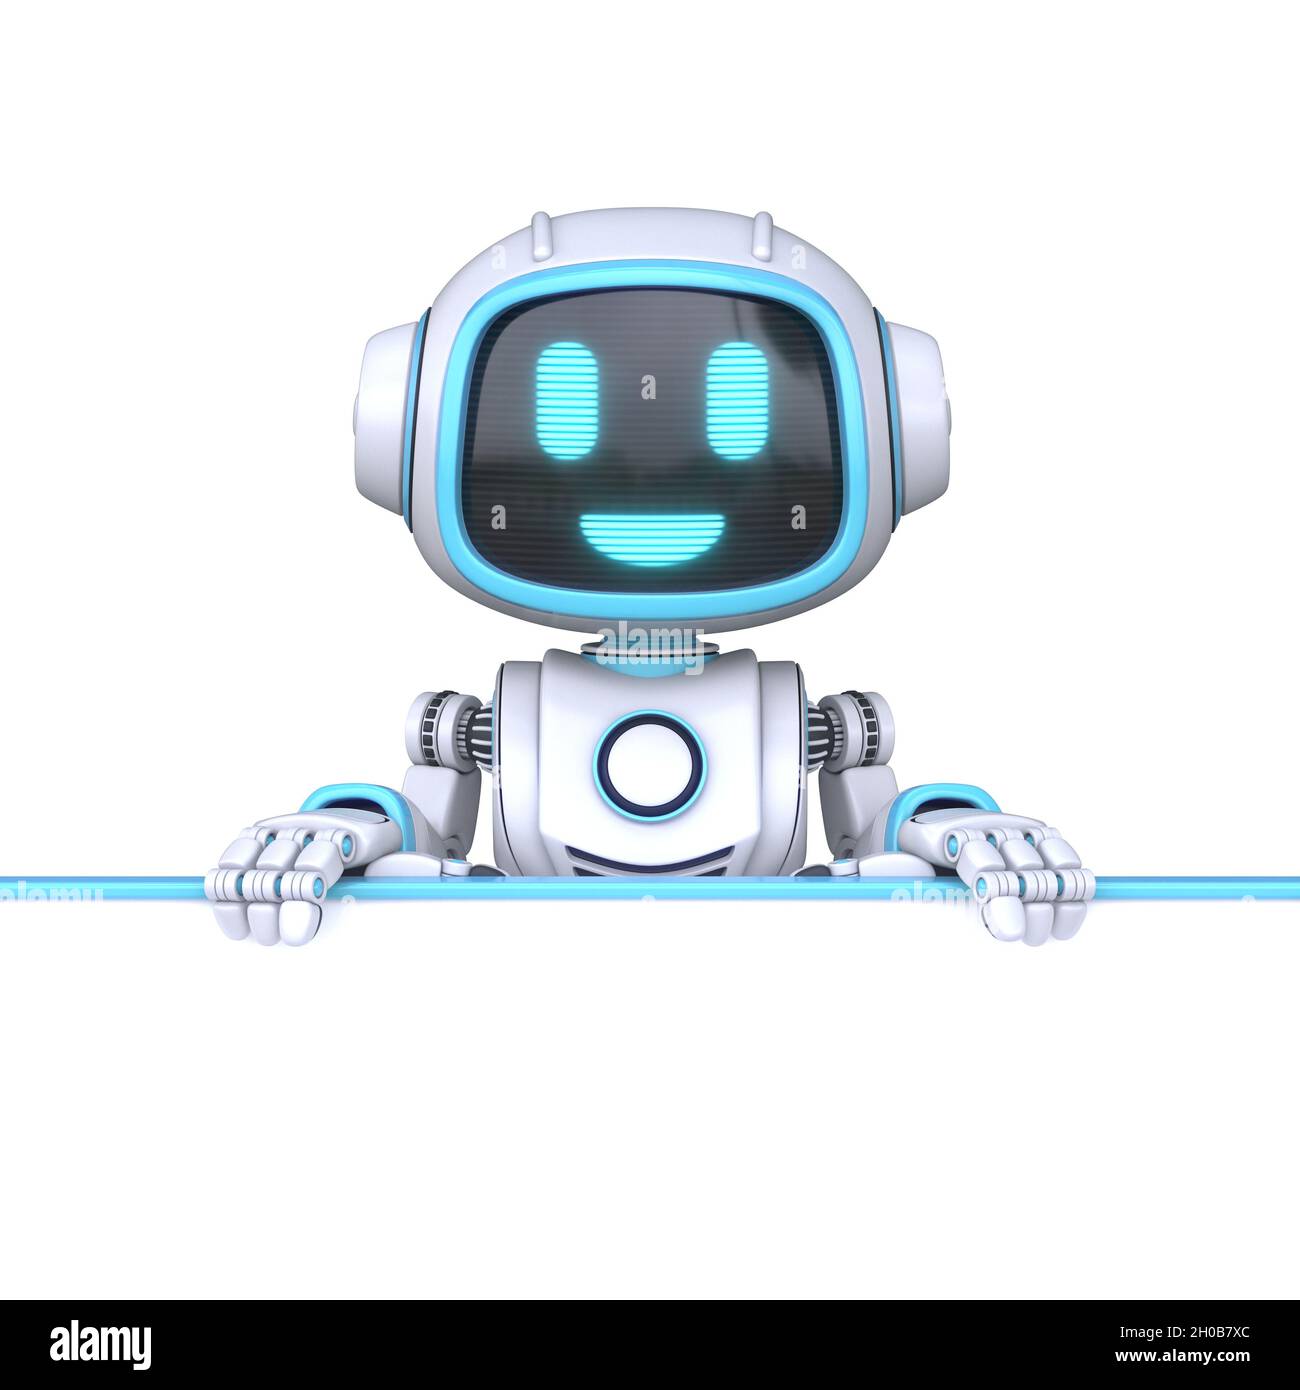 Cute blue robot sẽ khiến bạn thích thú. Hãy đến và xem những hình ảnh này để thấy xem những Robot dễ thương có thể như thế nào. Bạn sẽ không thể rời mắt khỏi chúng.